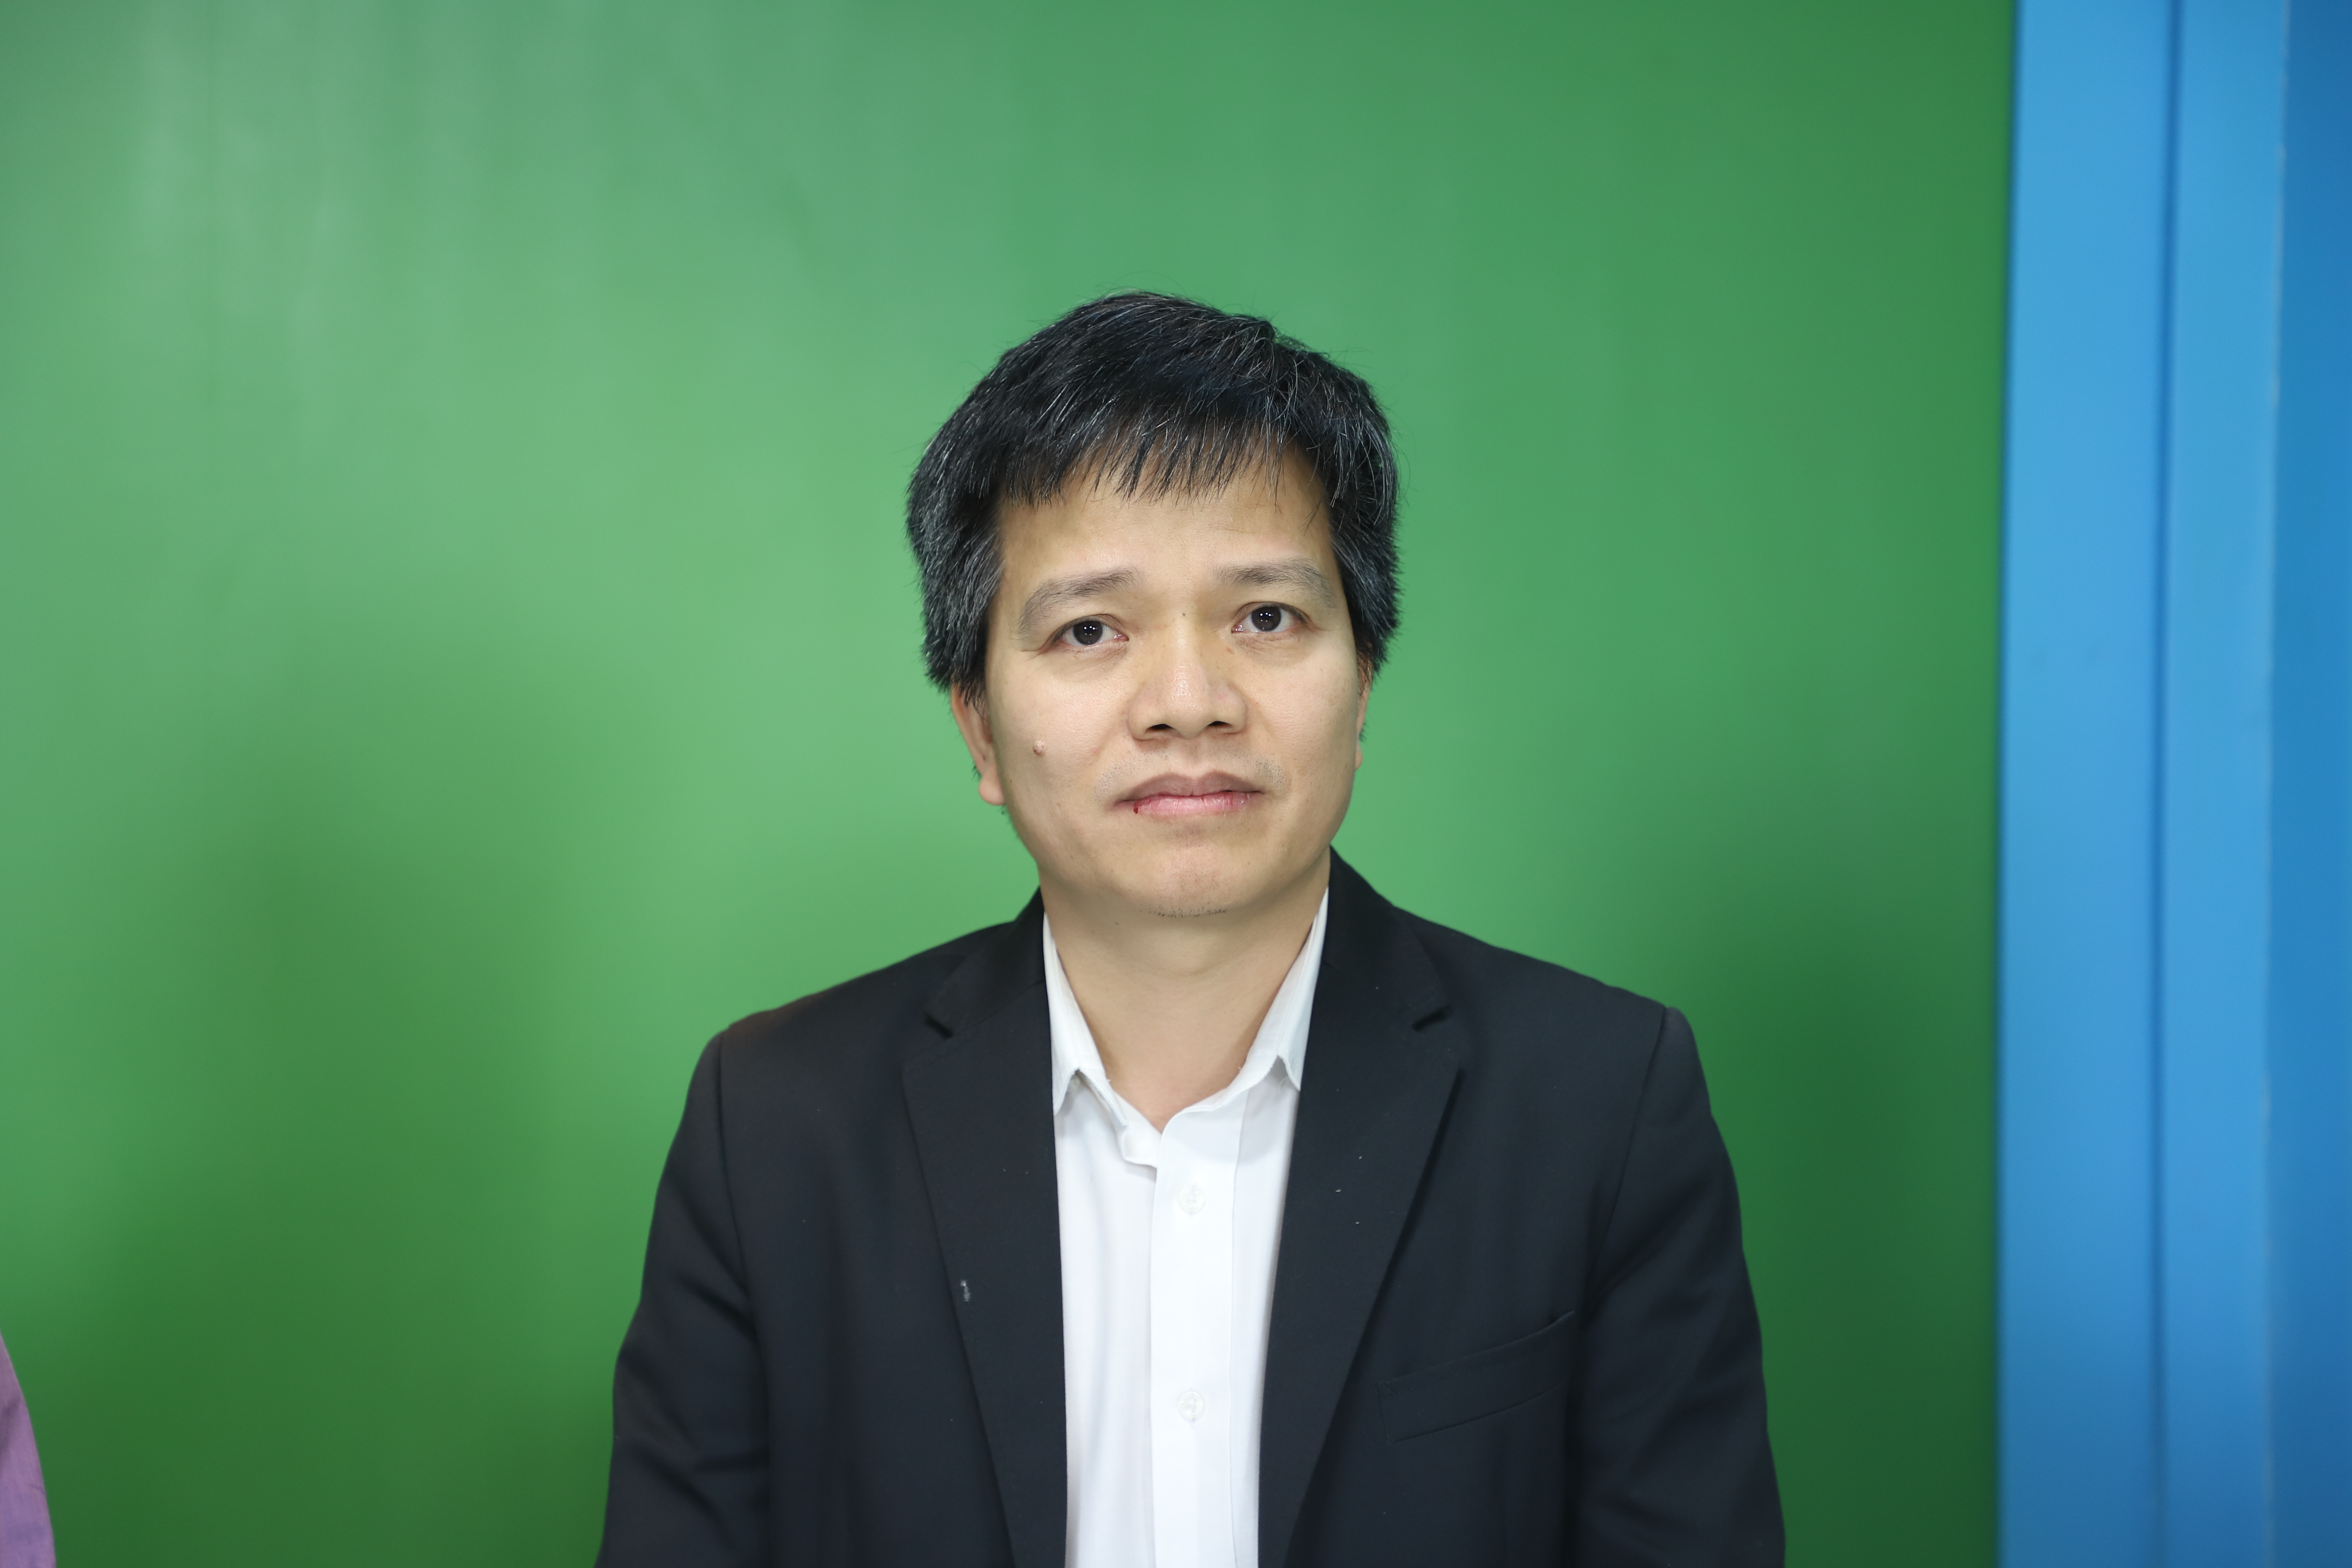 ông Nguyễn Văn Khang - Giám đốc R&D Tập đoàn Kangaroo